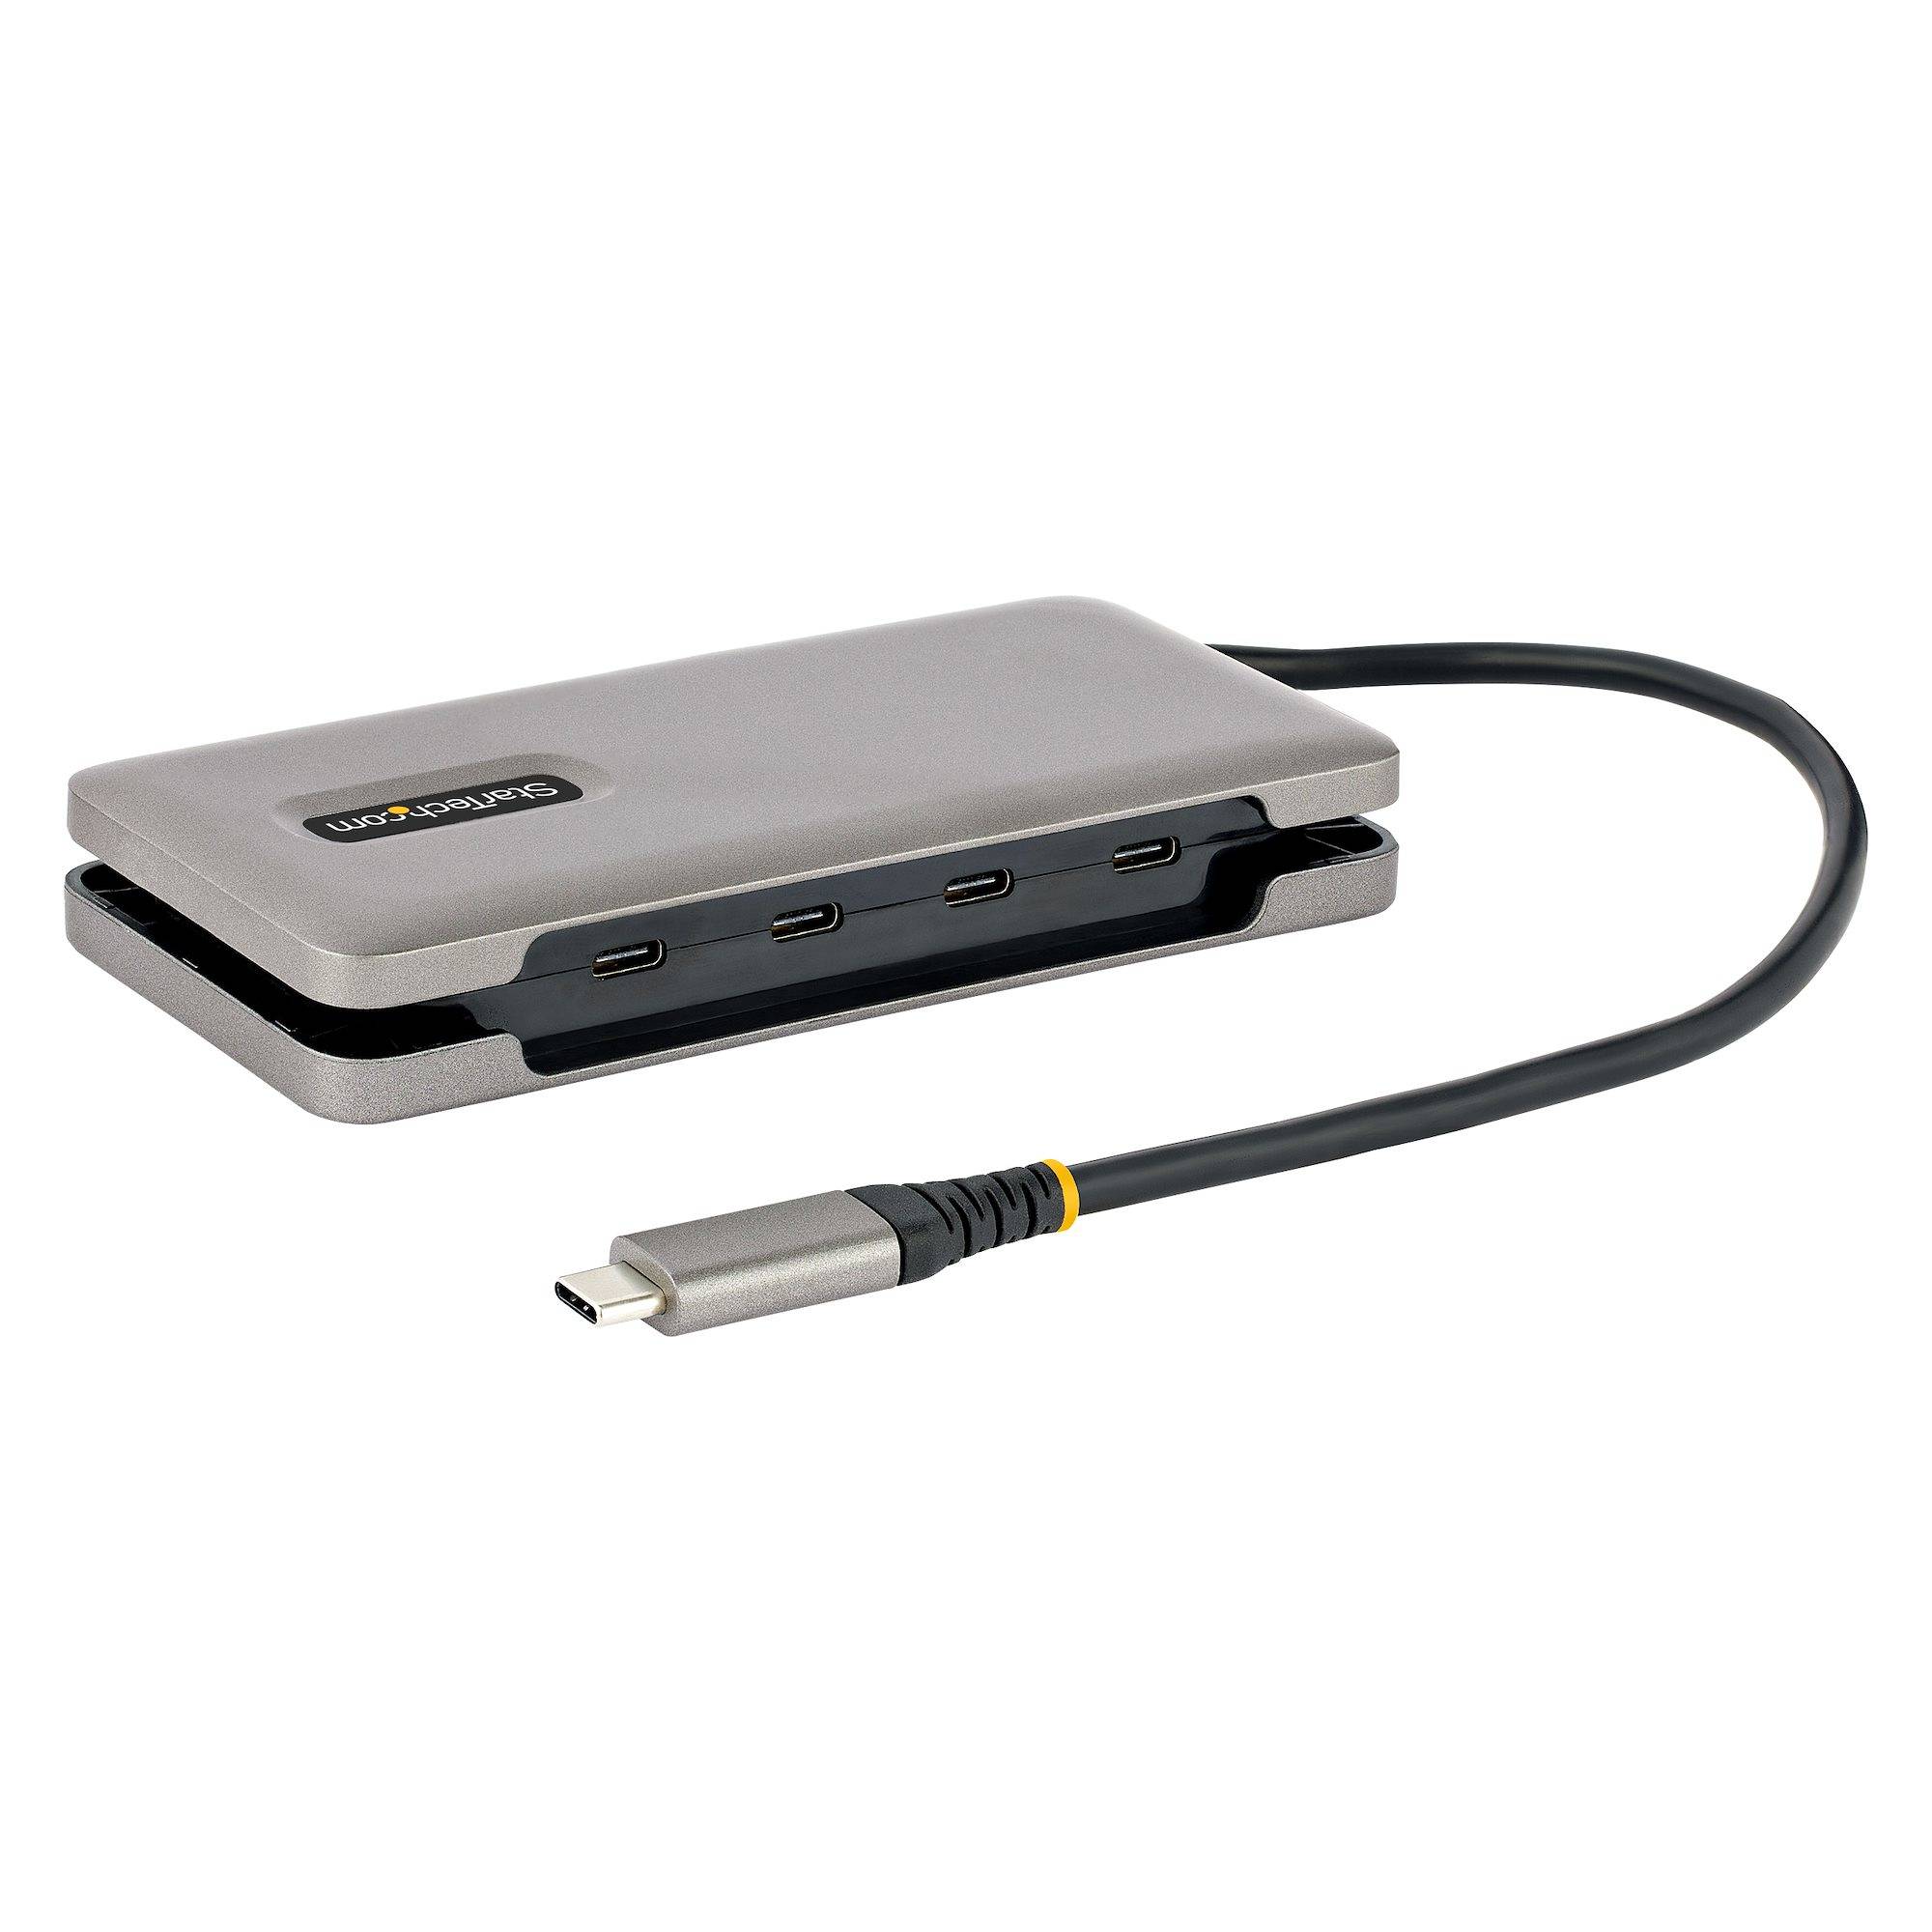 Rca Informatique - image du produit : 4-PORT USB-C HUB 4X USB TYPE-C 3.1 10GBPS 100W PD PASS-THROUGH